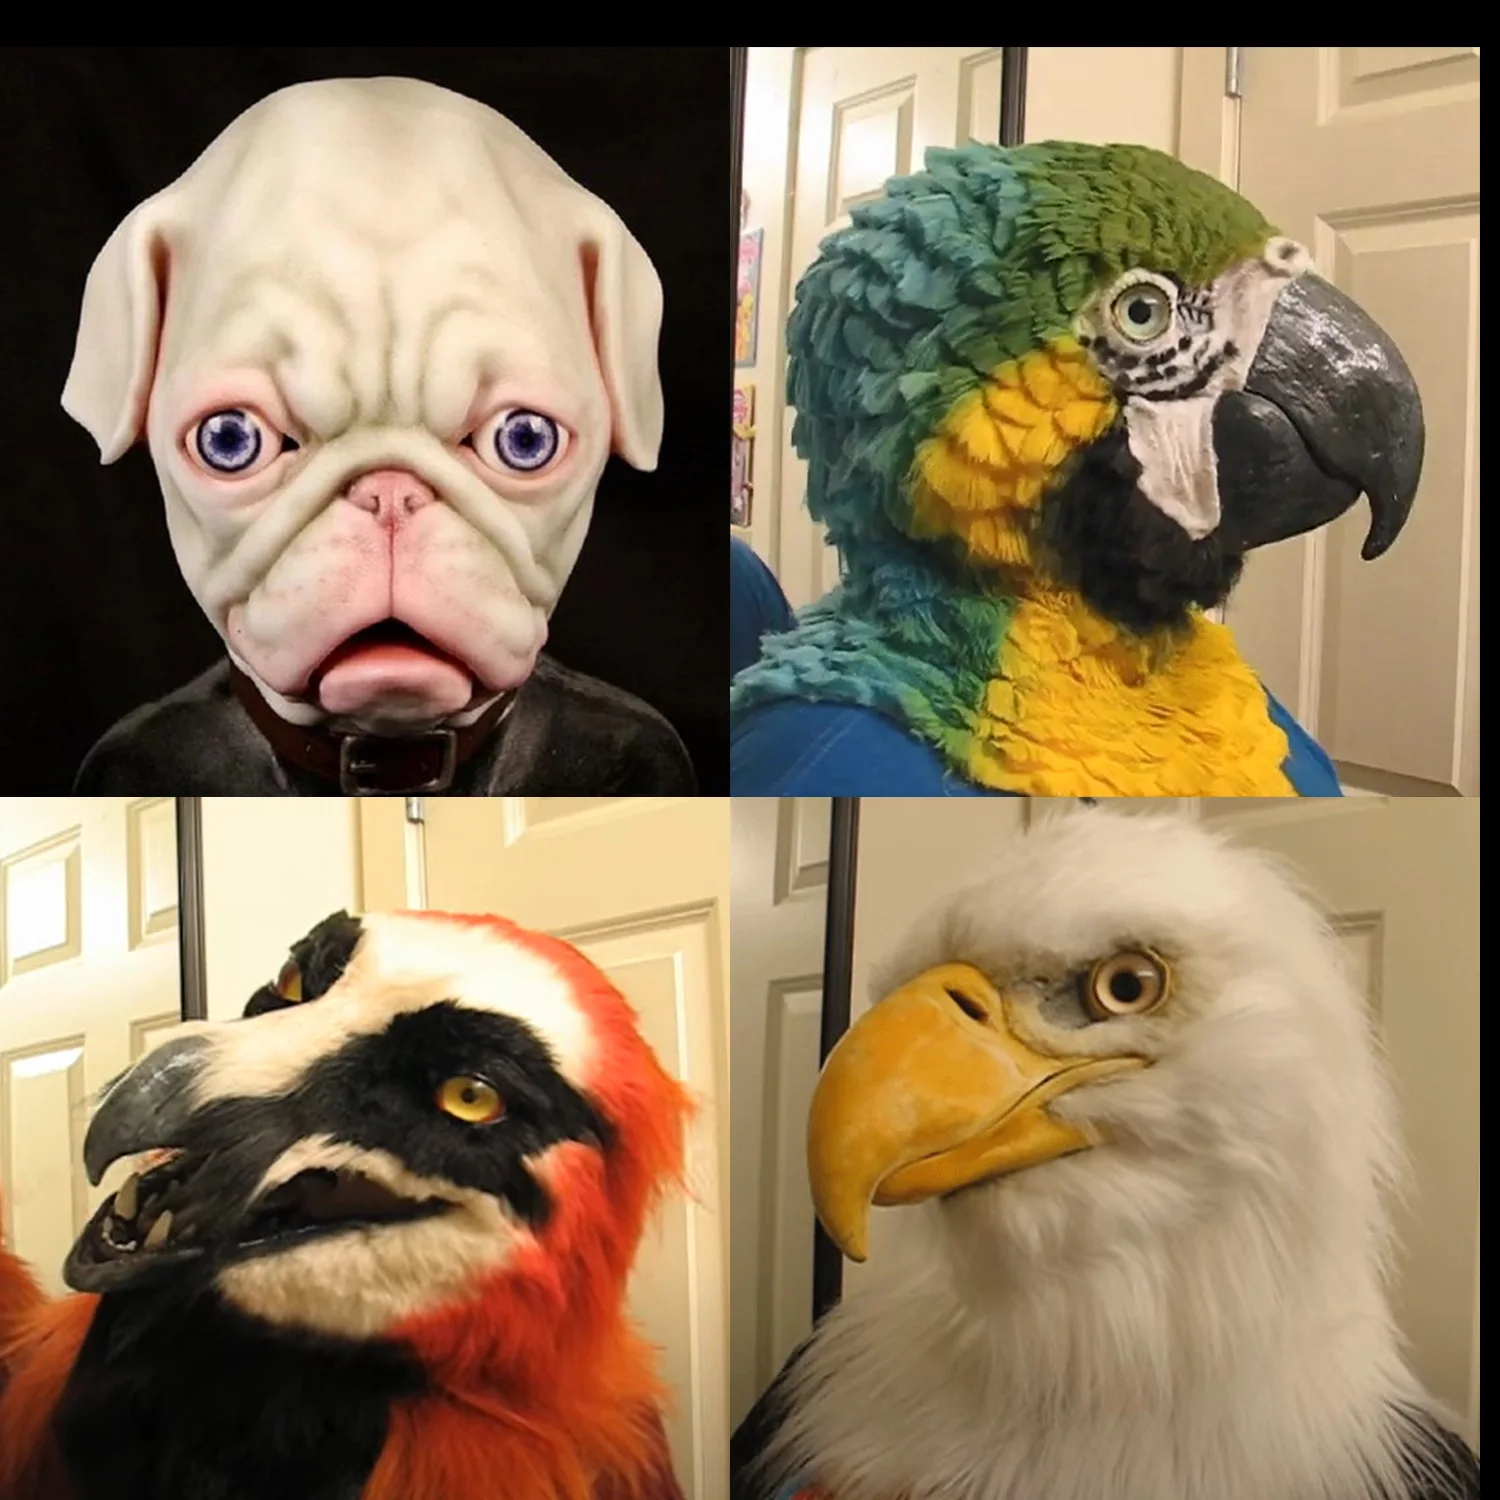 Eagle maske eagle hovedbeklædning halloween dyr bulldog papegøje gammel mand ung mand hovedbeklædning maske for cosplay parti